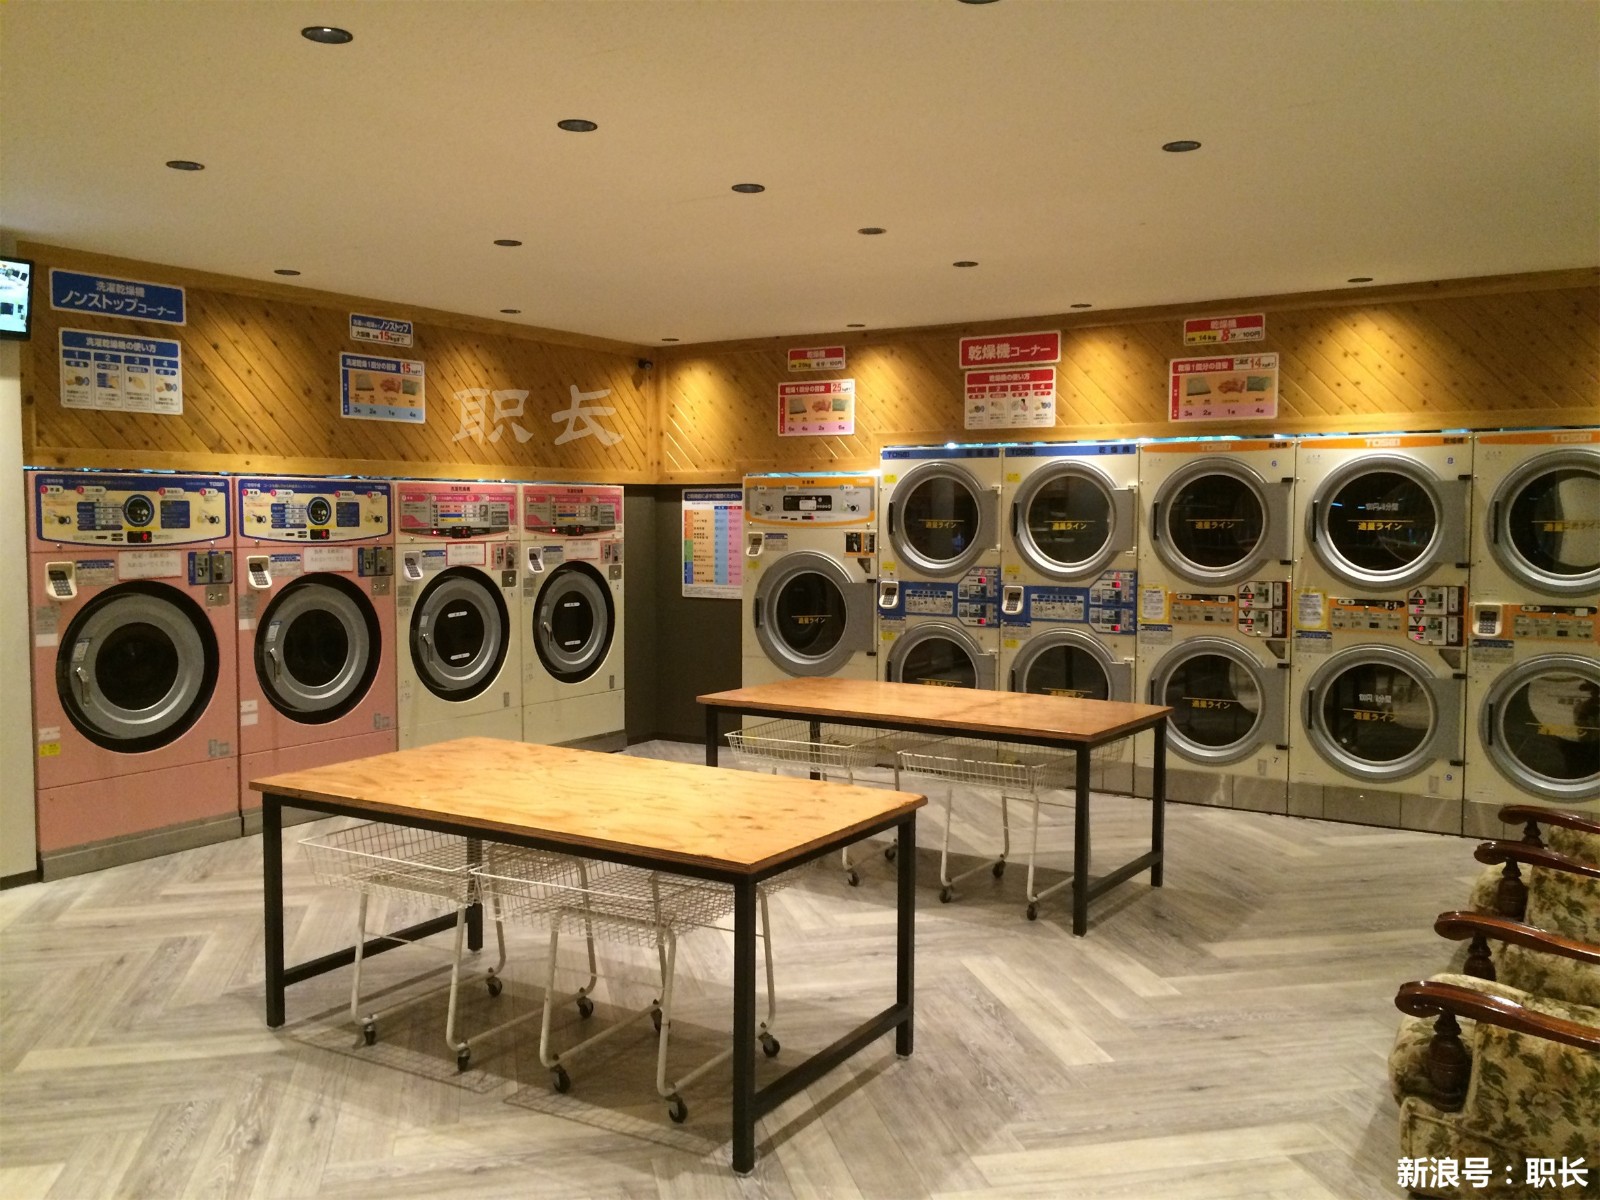 為什么國外很流行的“共享洗衣機”，在國內卻沒人用？